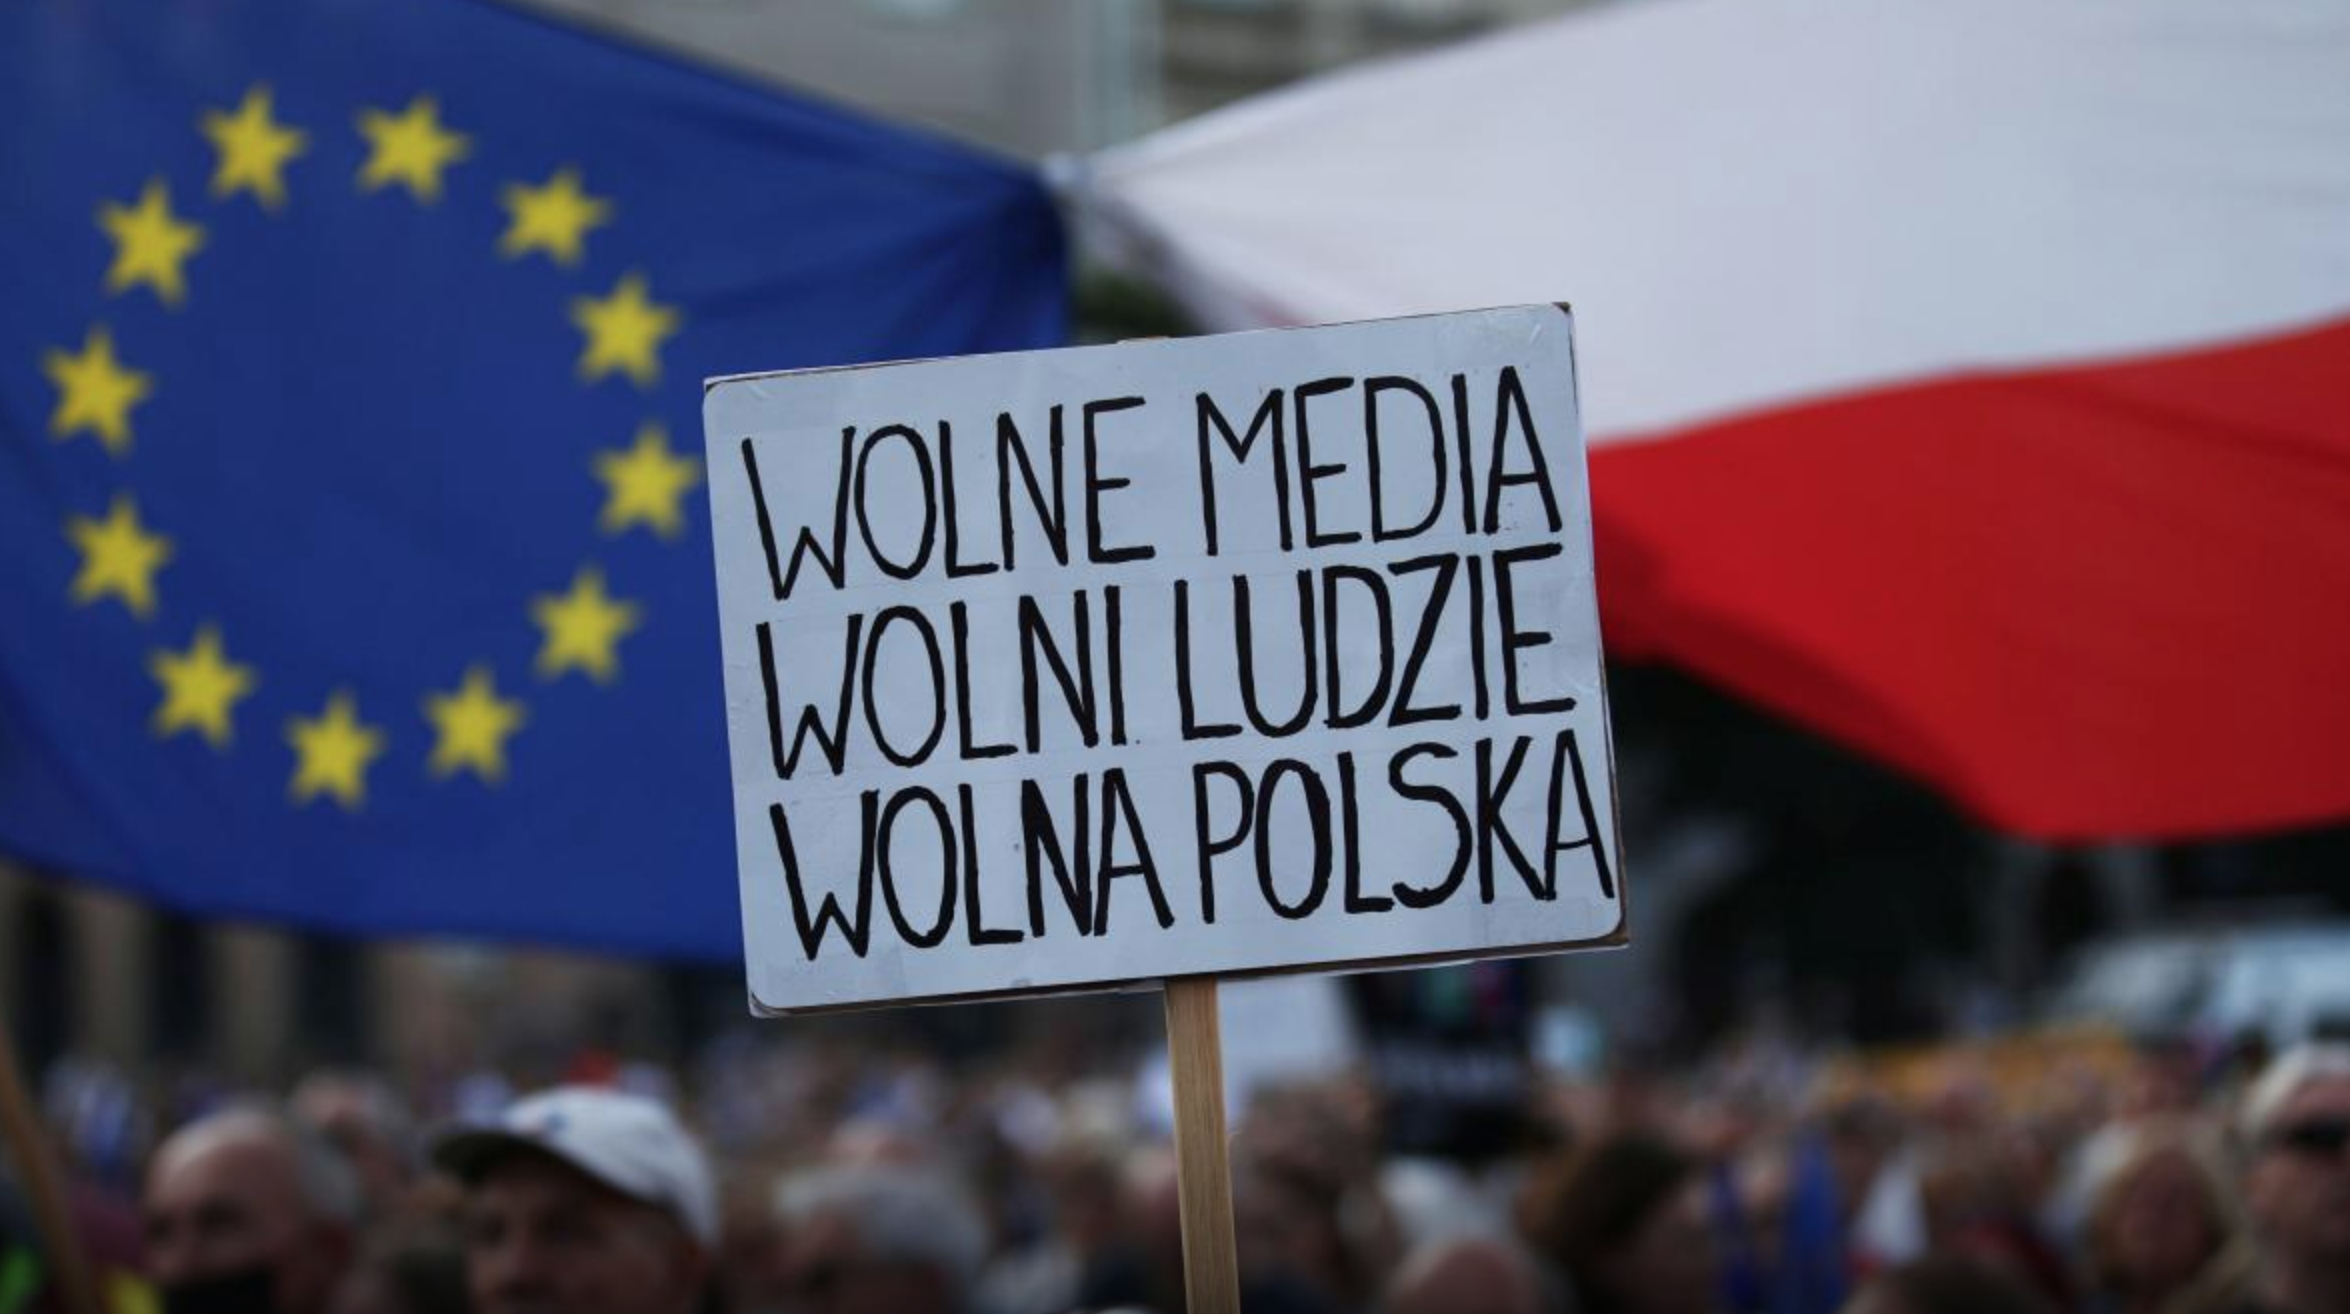 Polská vláda omezuje svobodu slova. Polská cesta ukazuje, jak křehká je svoboda médií